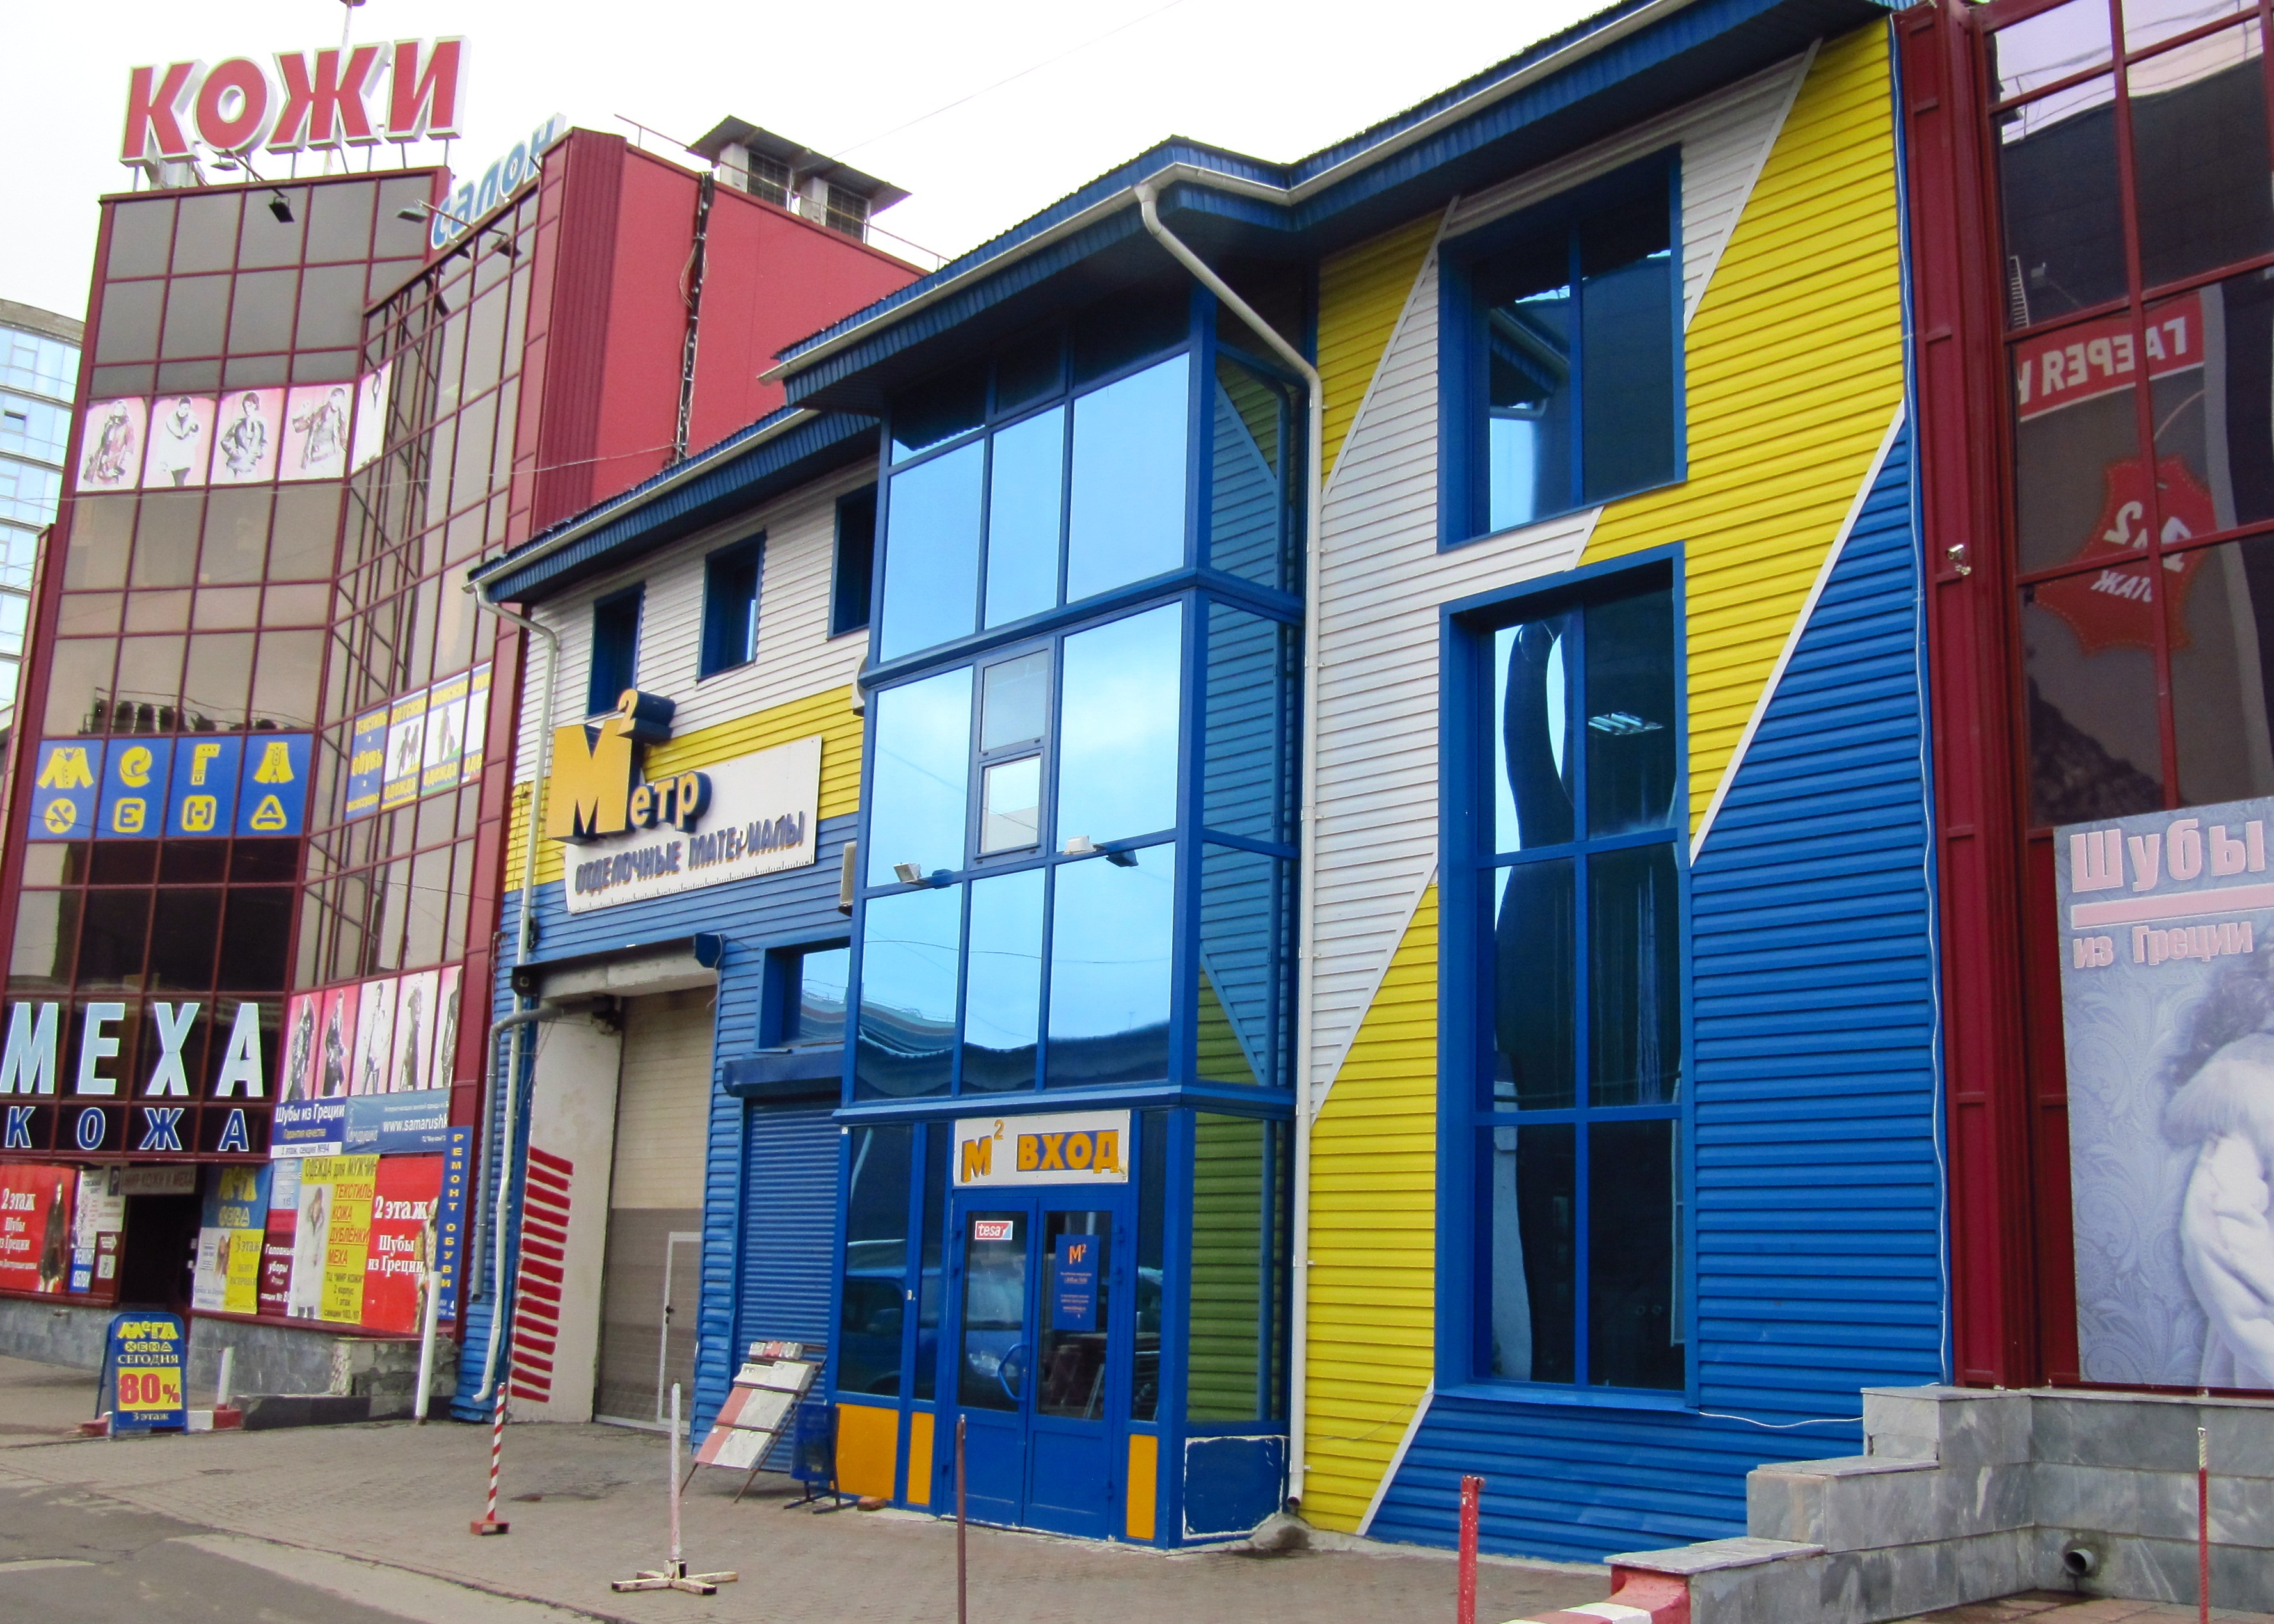 Фасад магазина "Метр Квадратный"